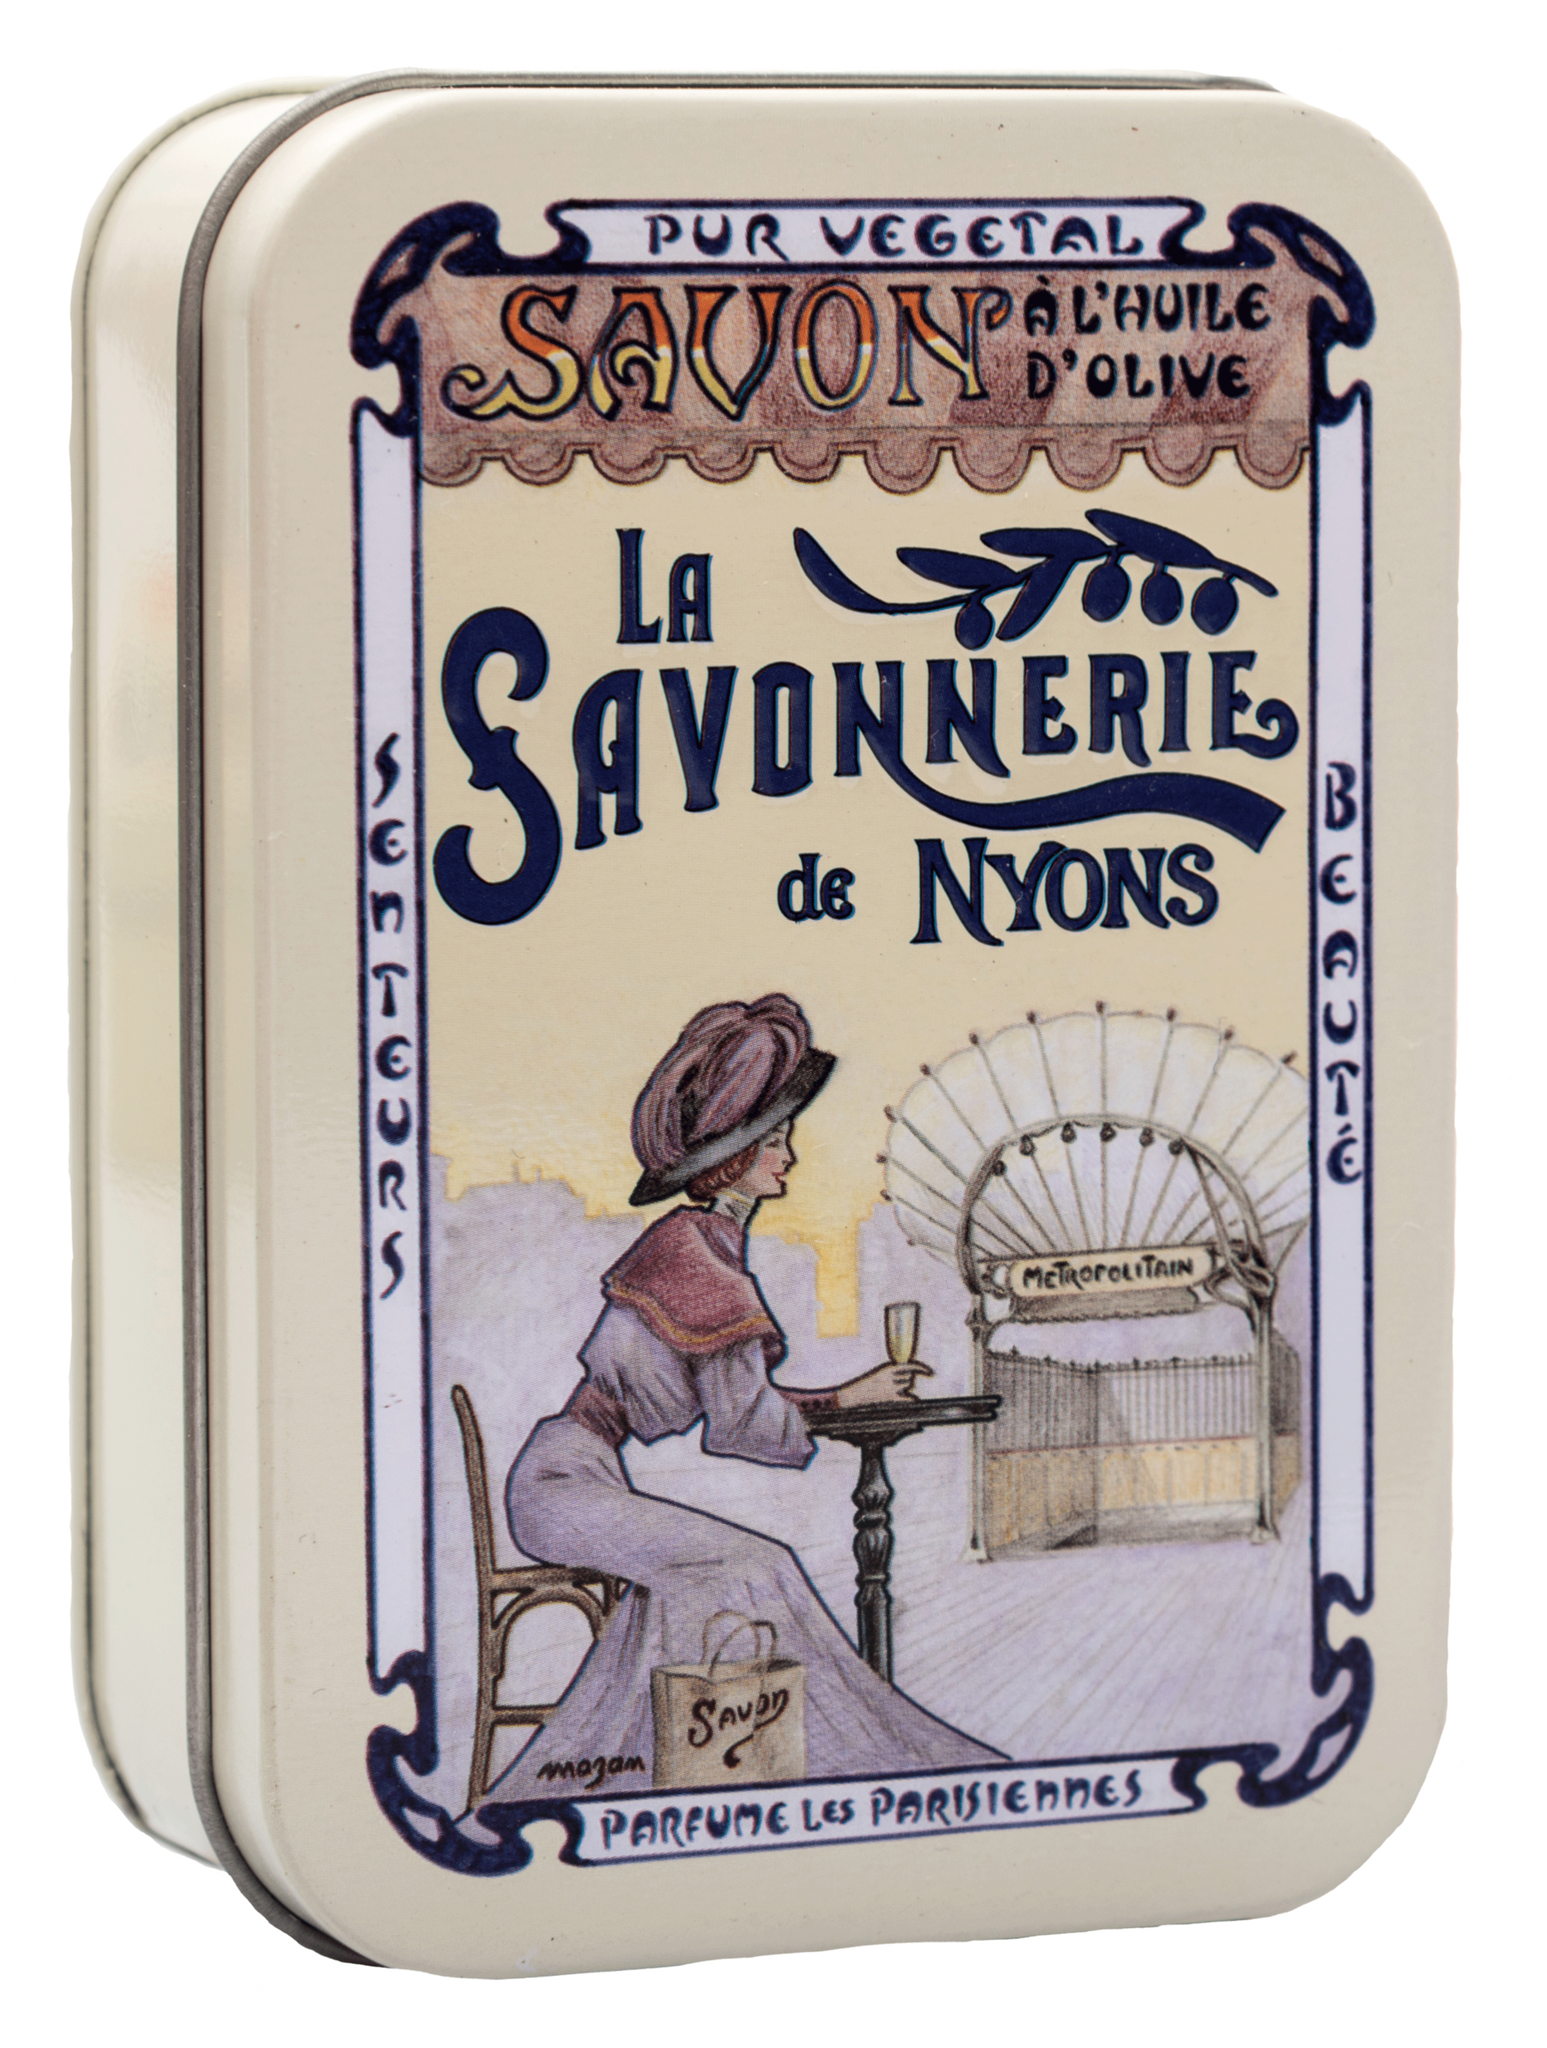 Sachet Parfumé Rose de Mai Vintage - La Savonnerie de Nyons